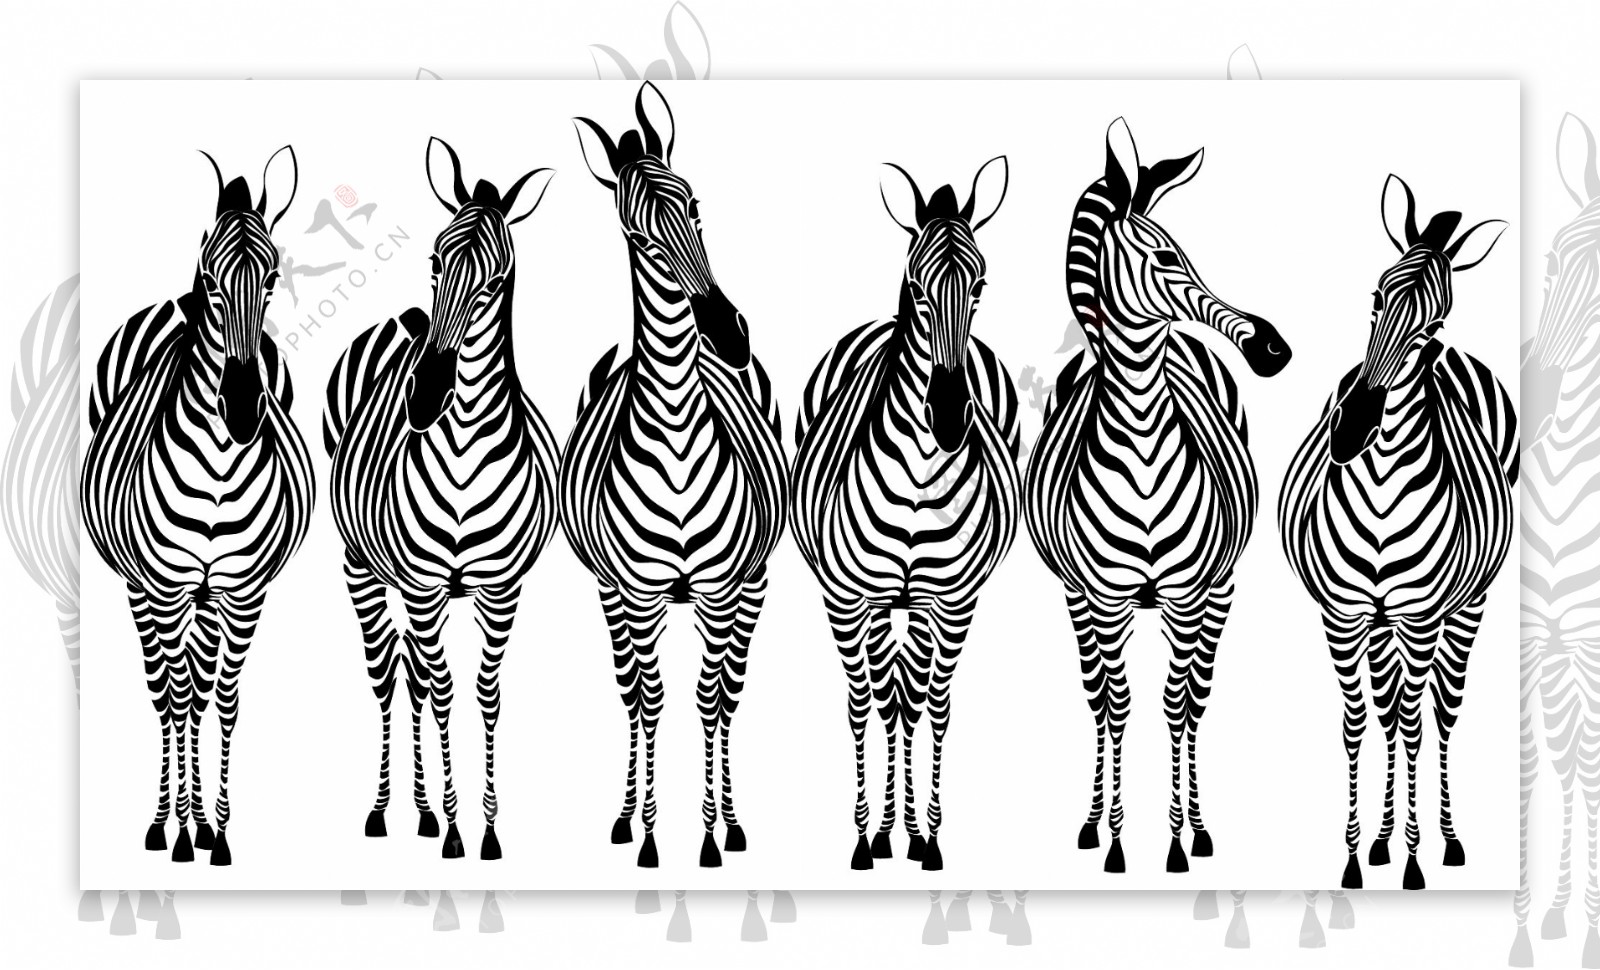 手工绘制的斑马和长颈鹿设计矢量图03